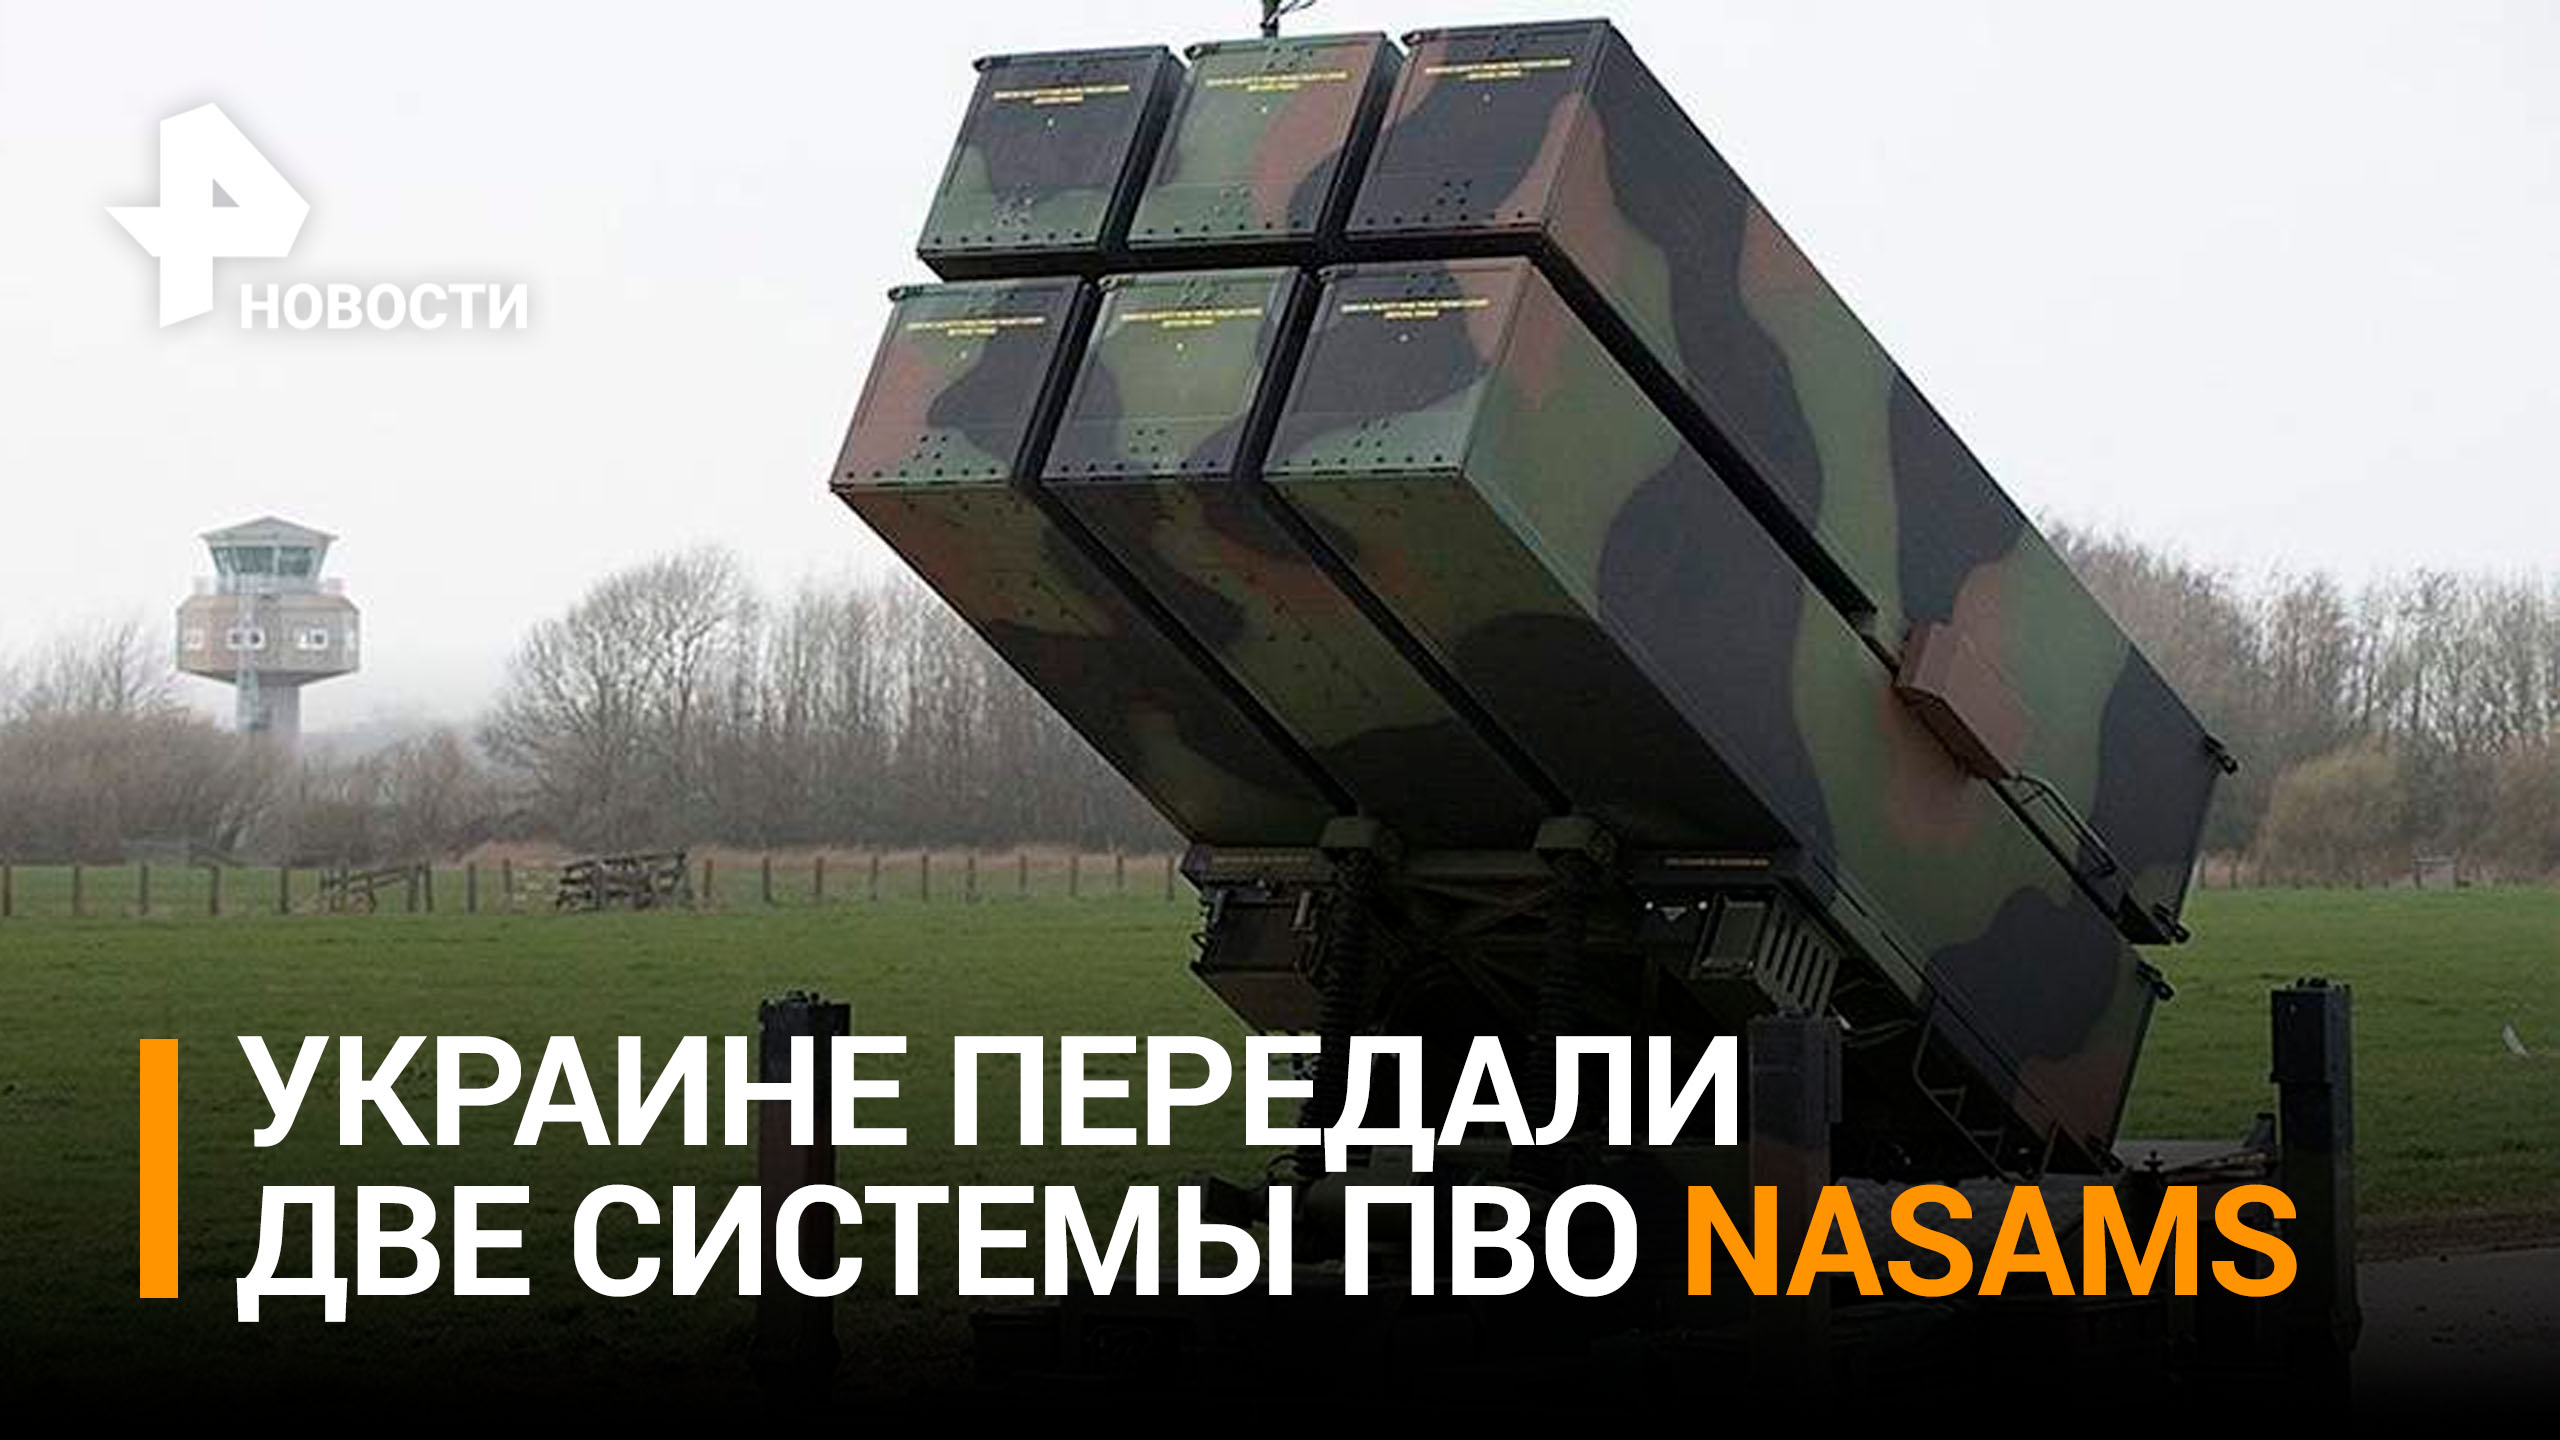 Пентагон подтвердил передачу двух систем NASAMS Киеву / РЕН Новости